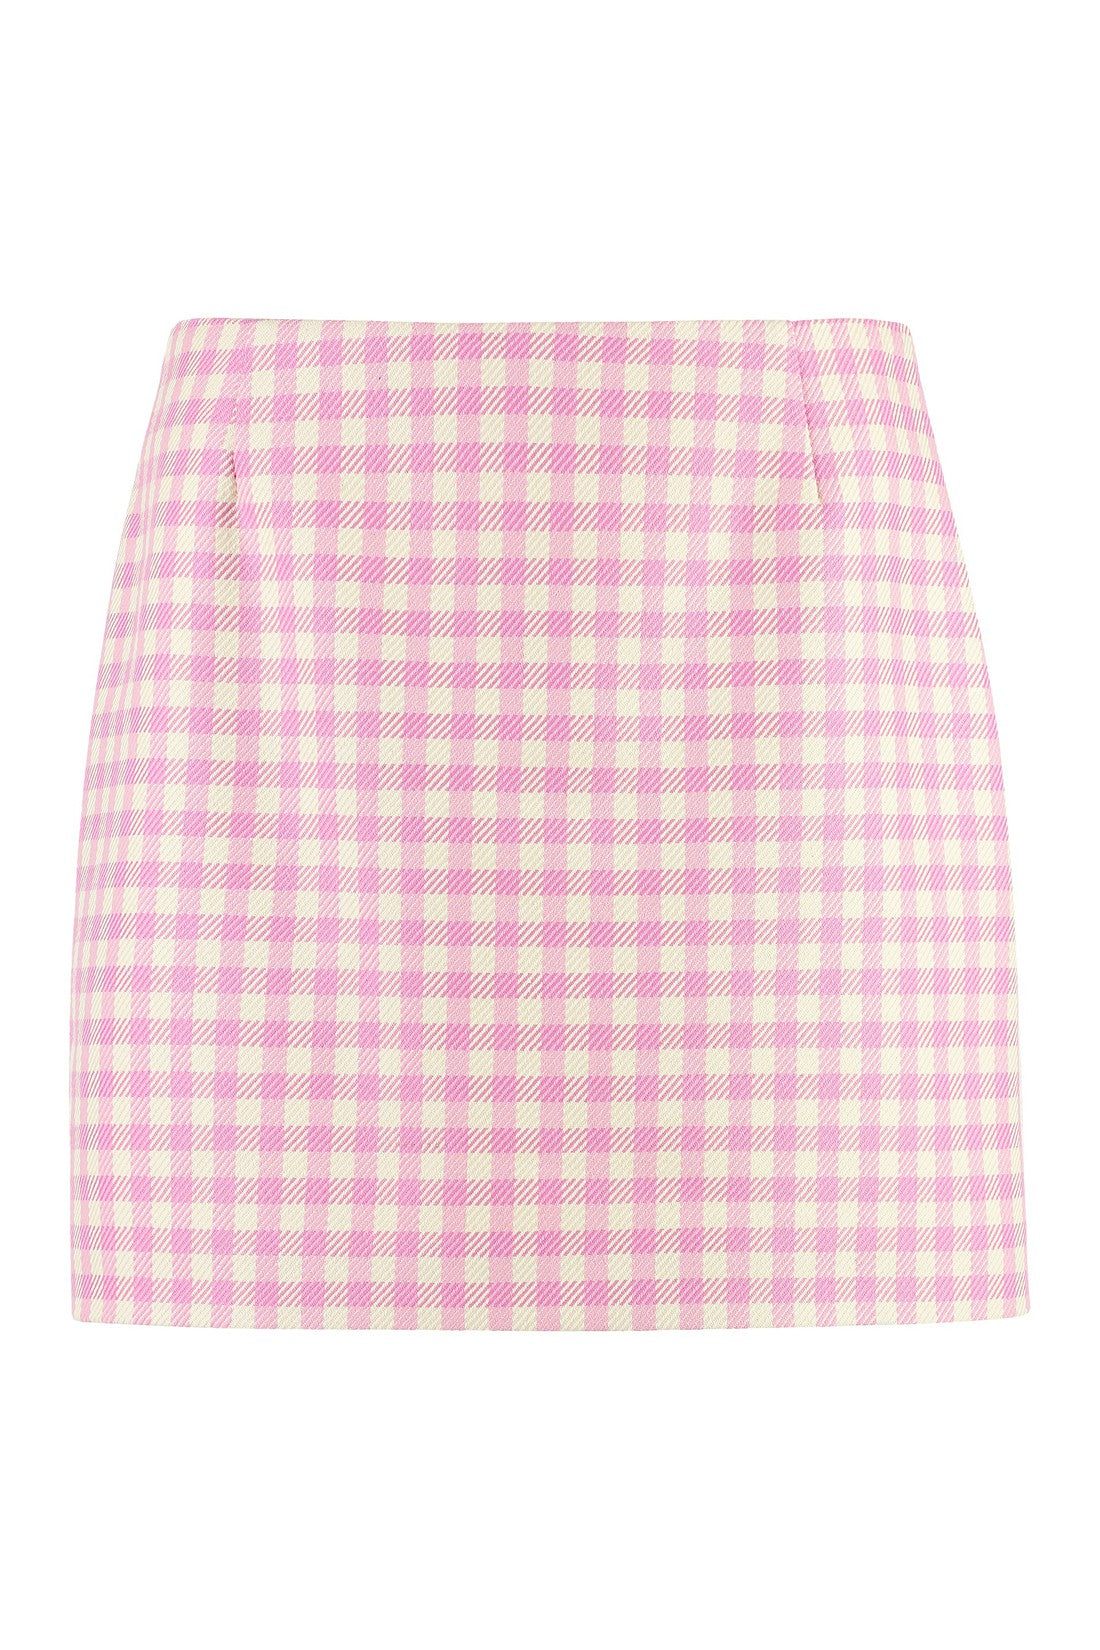 AMI PARIS-OUTLET-SALE-Cotton and wool mini-skirt-ARCHIVIST